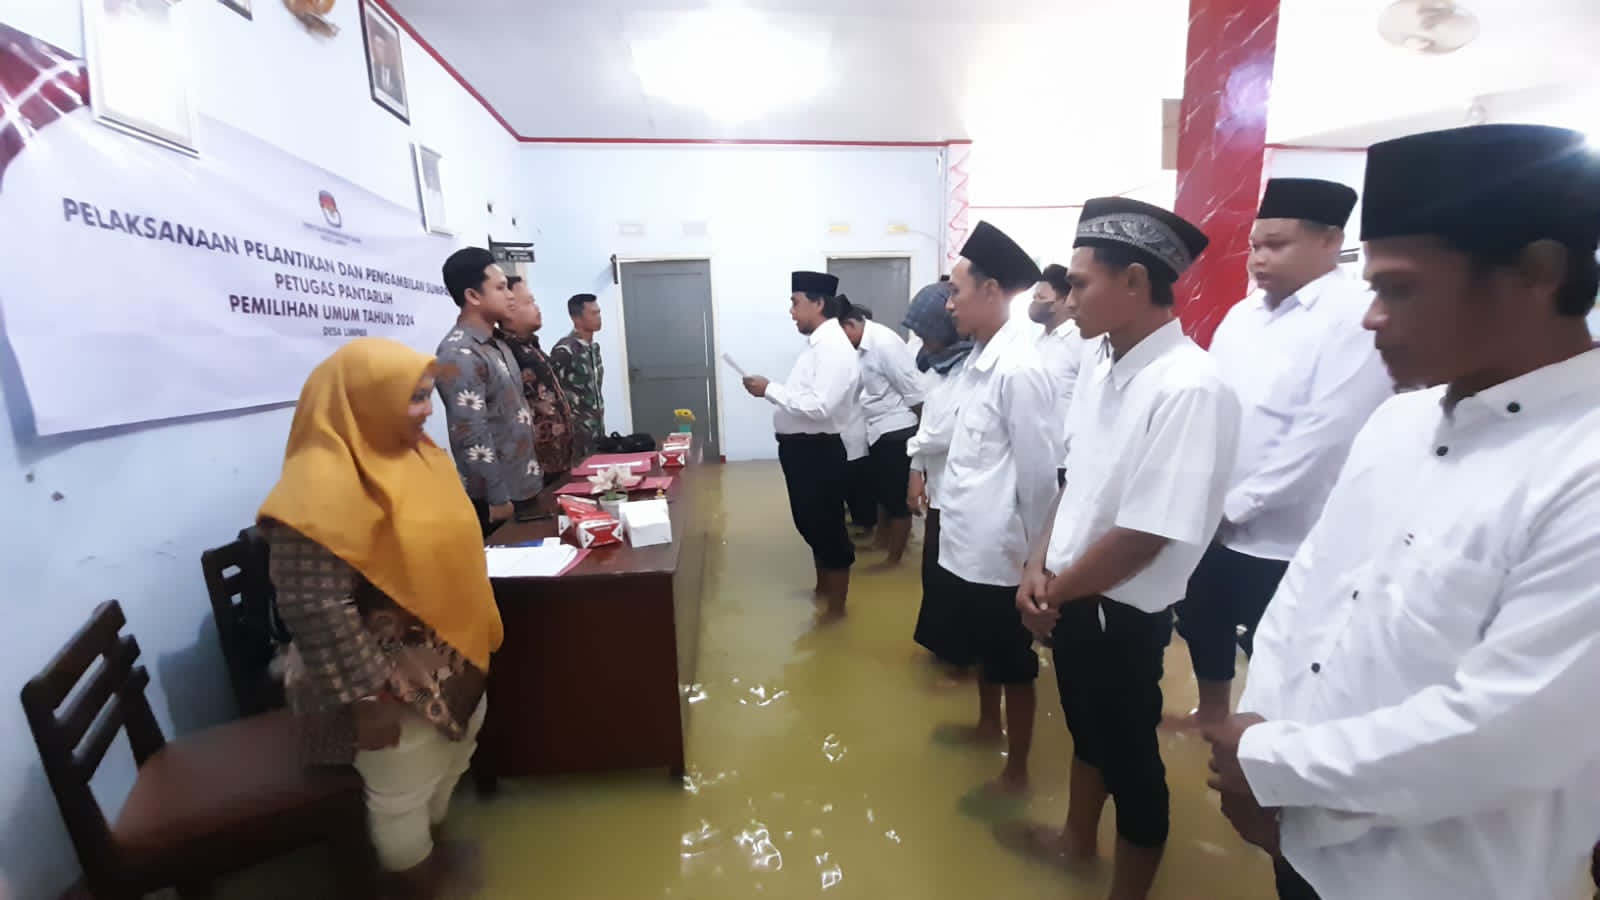 Semangat! Petugas Pantarlih Tetap Ikuti Acara Pelantikan Ditengah Kepungan Banjir